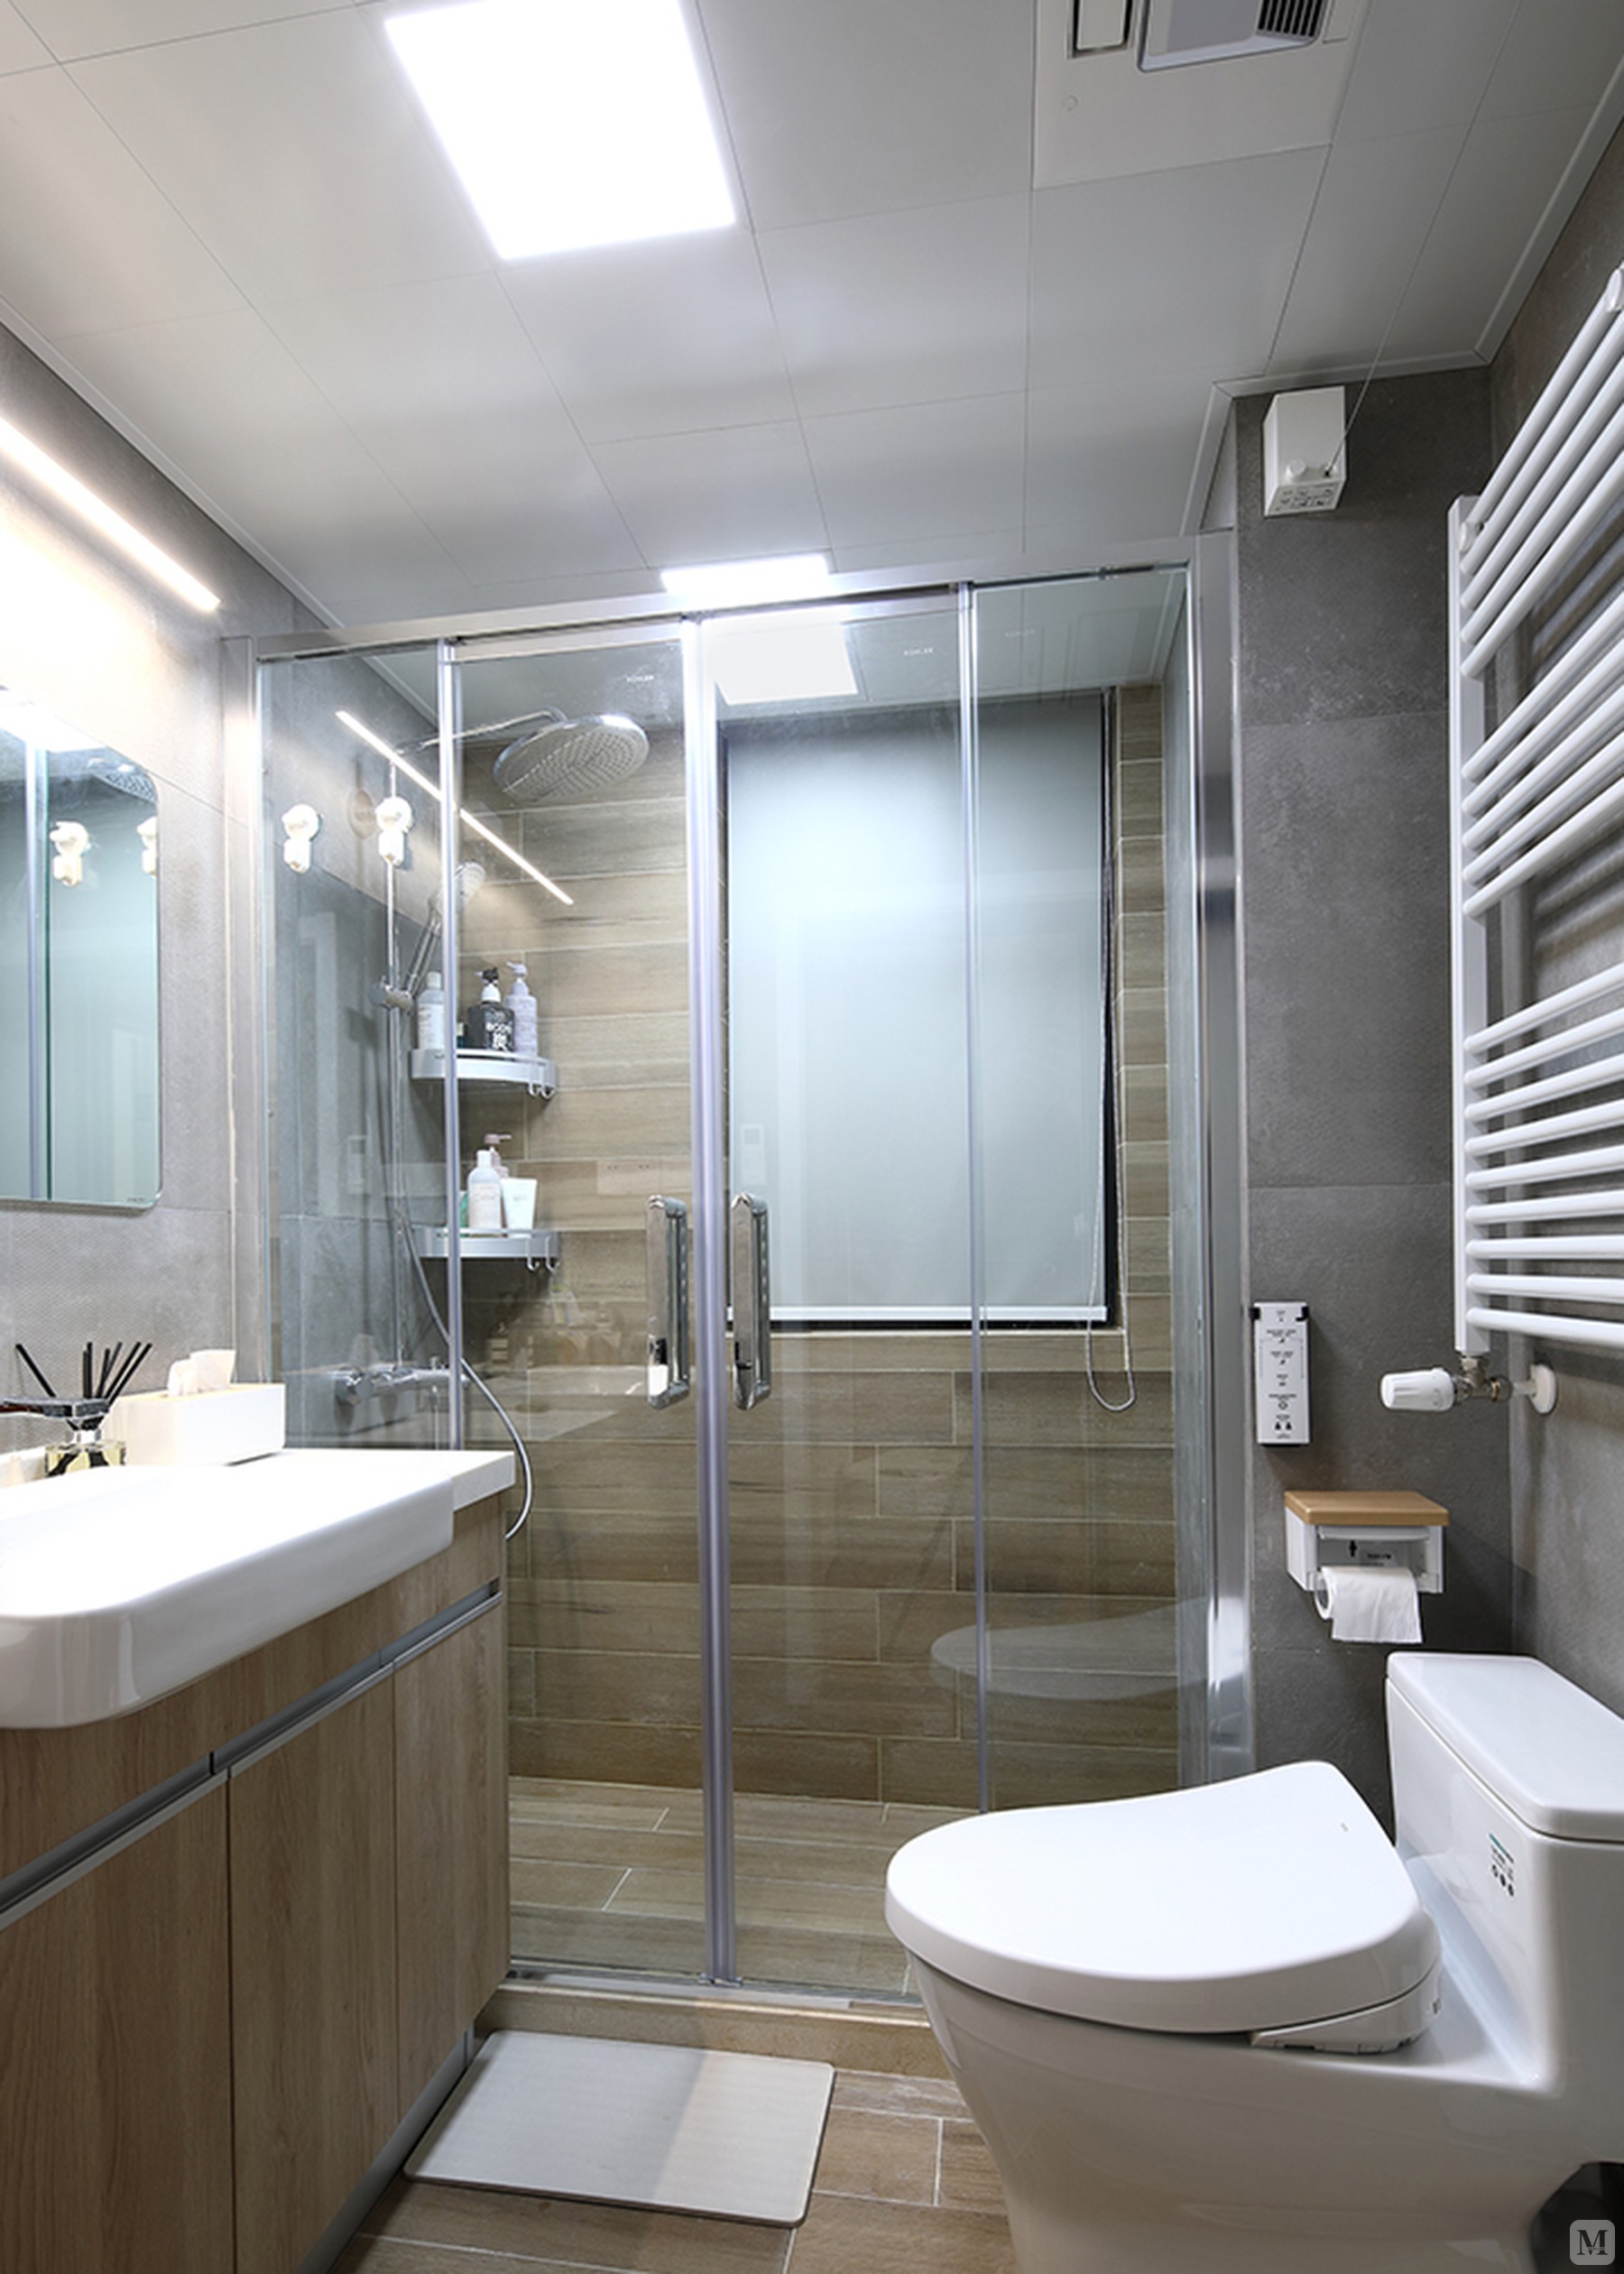 图片信息 作品名称:简约卫生间浴缸装修效果图 格式:jpg 尺寸:1800 x